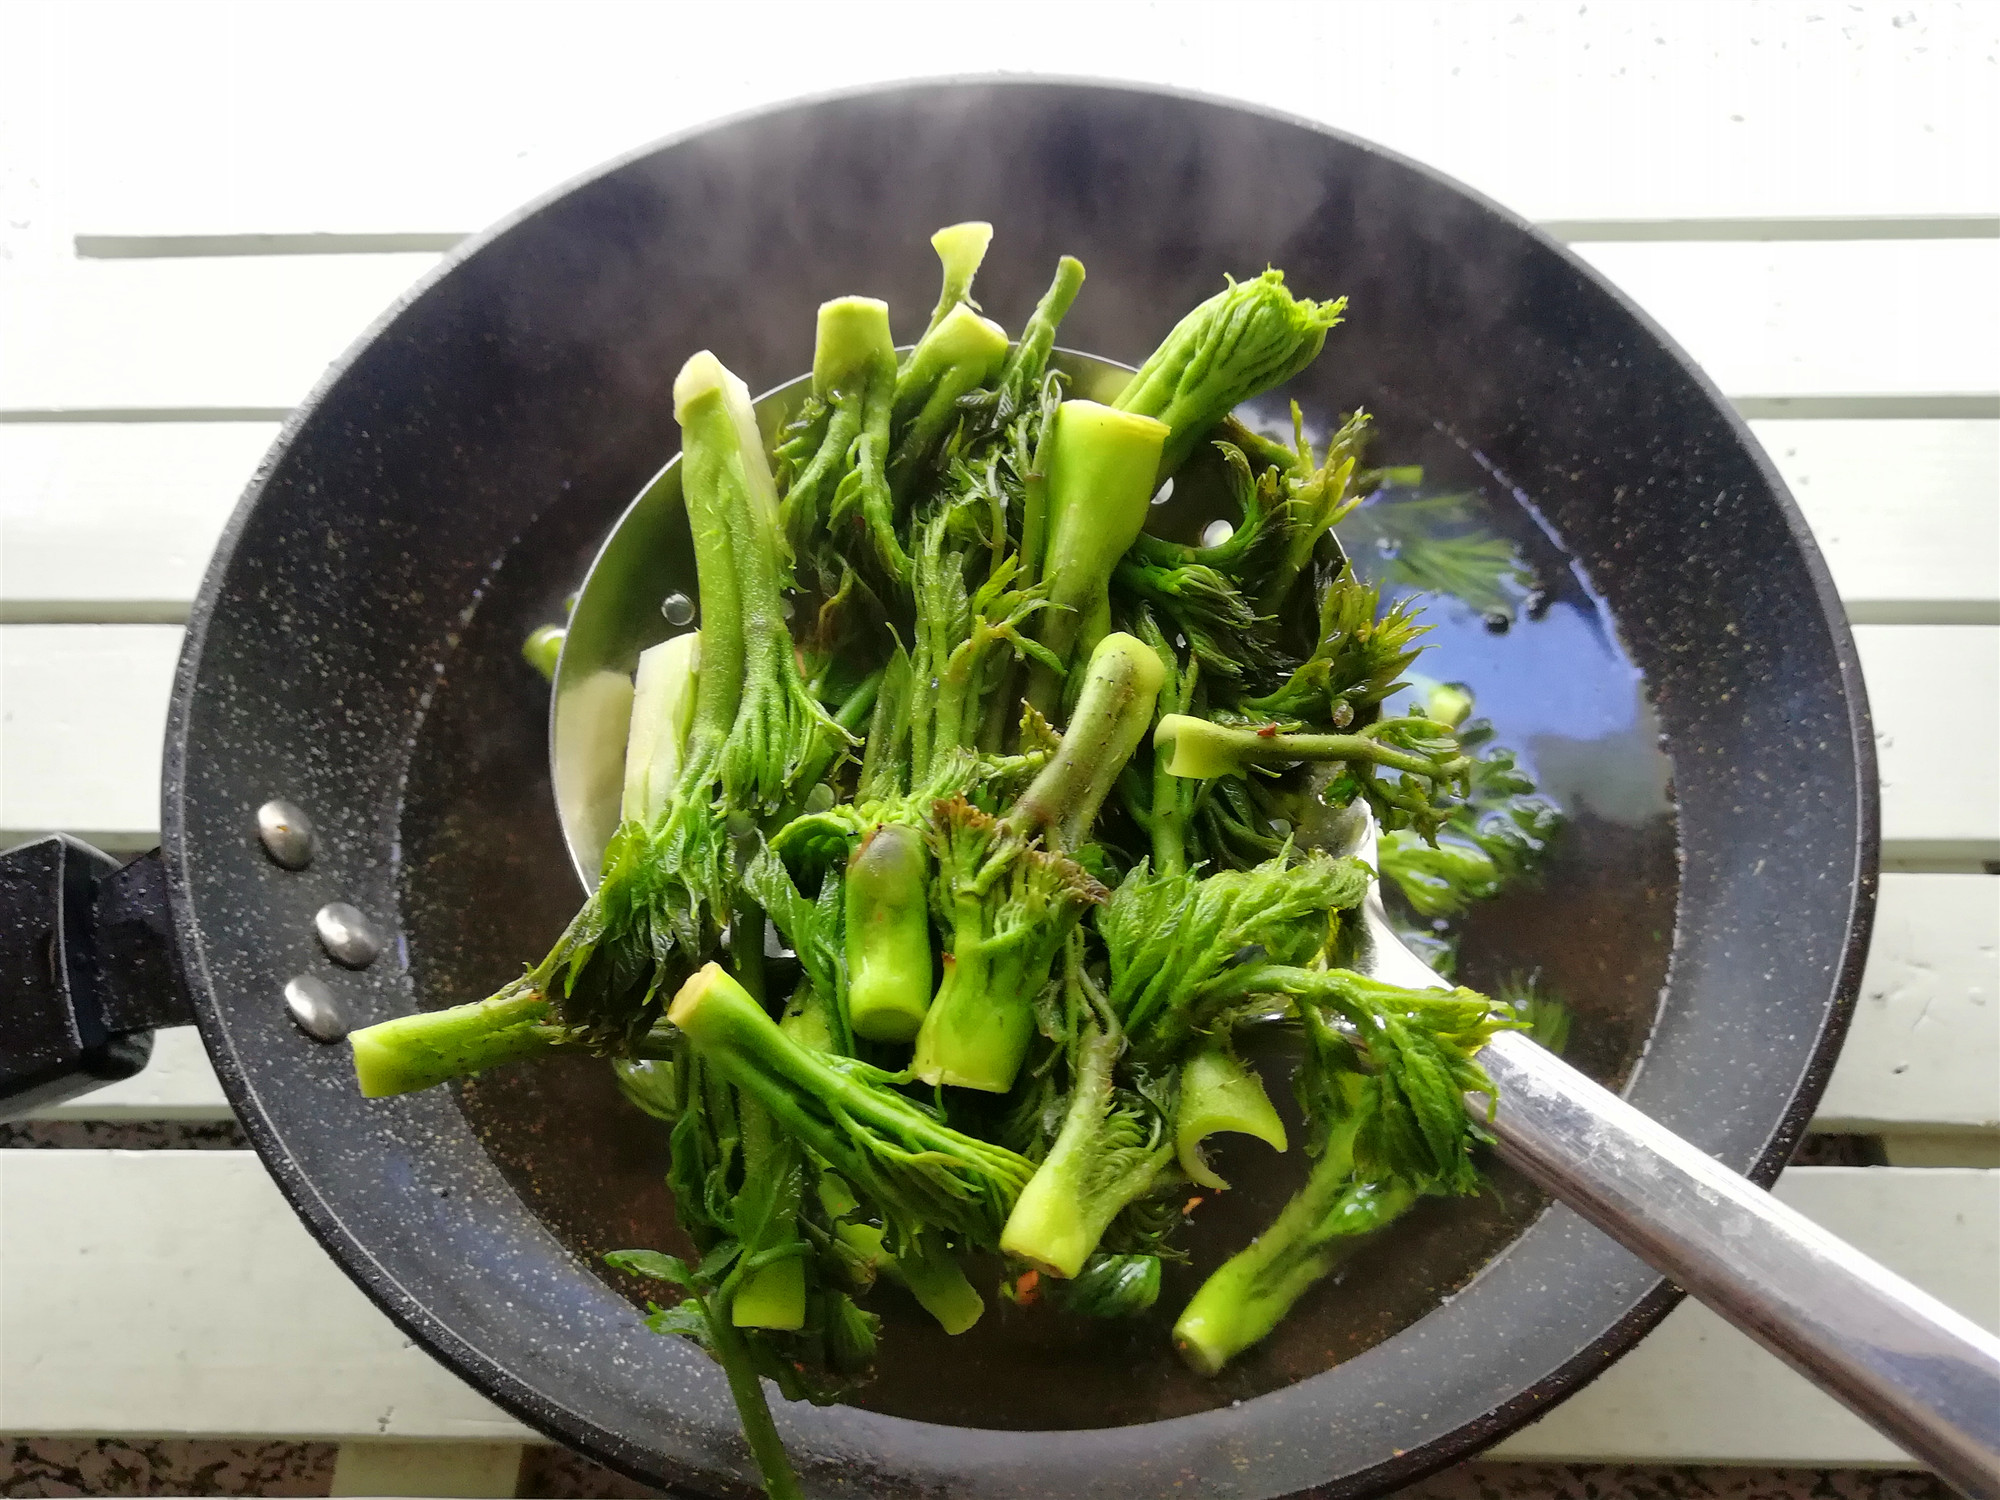 原创东北五月野菜香,这种野菜被誉为树上人参外地吃不到,营养高